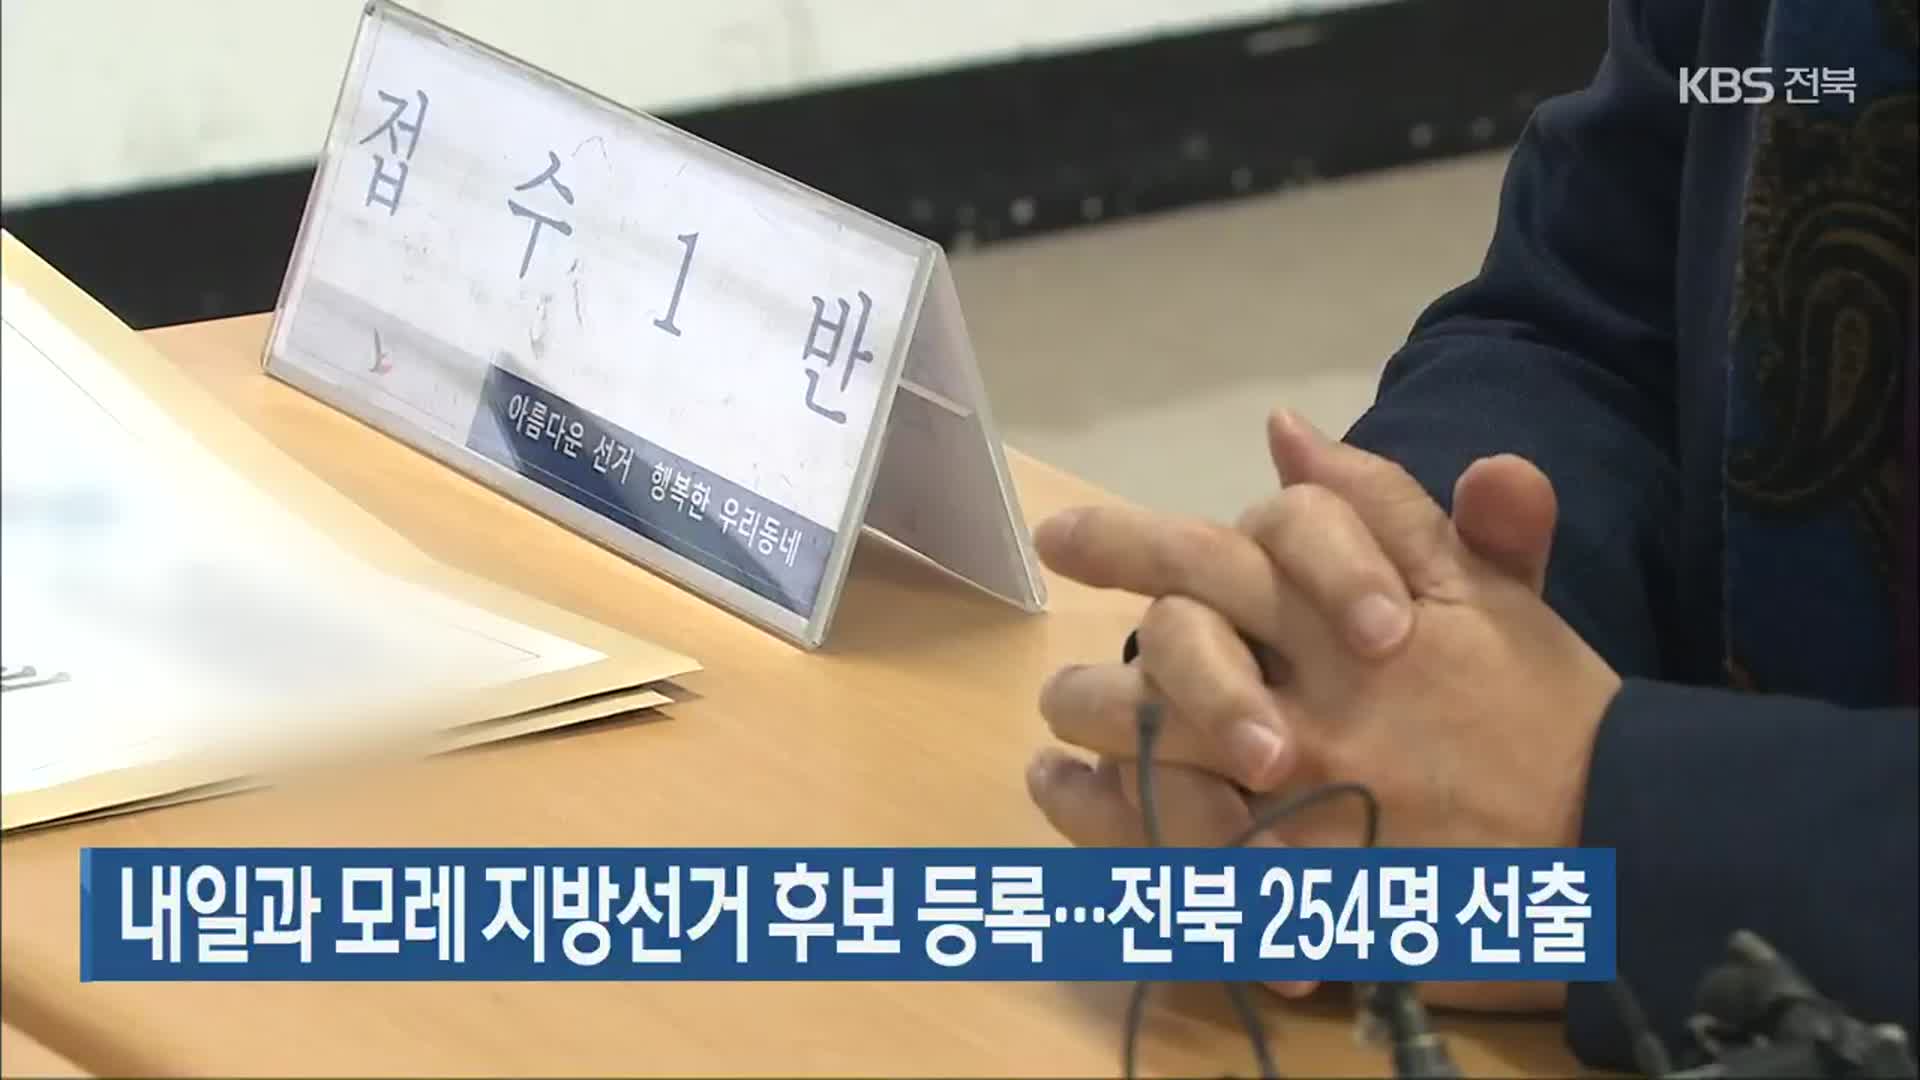 내일과 모레 지방선거 후보 등록…전북 254명 선출